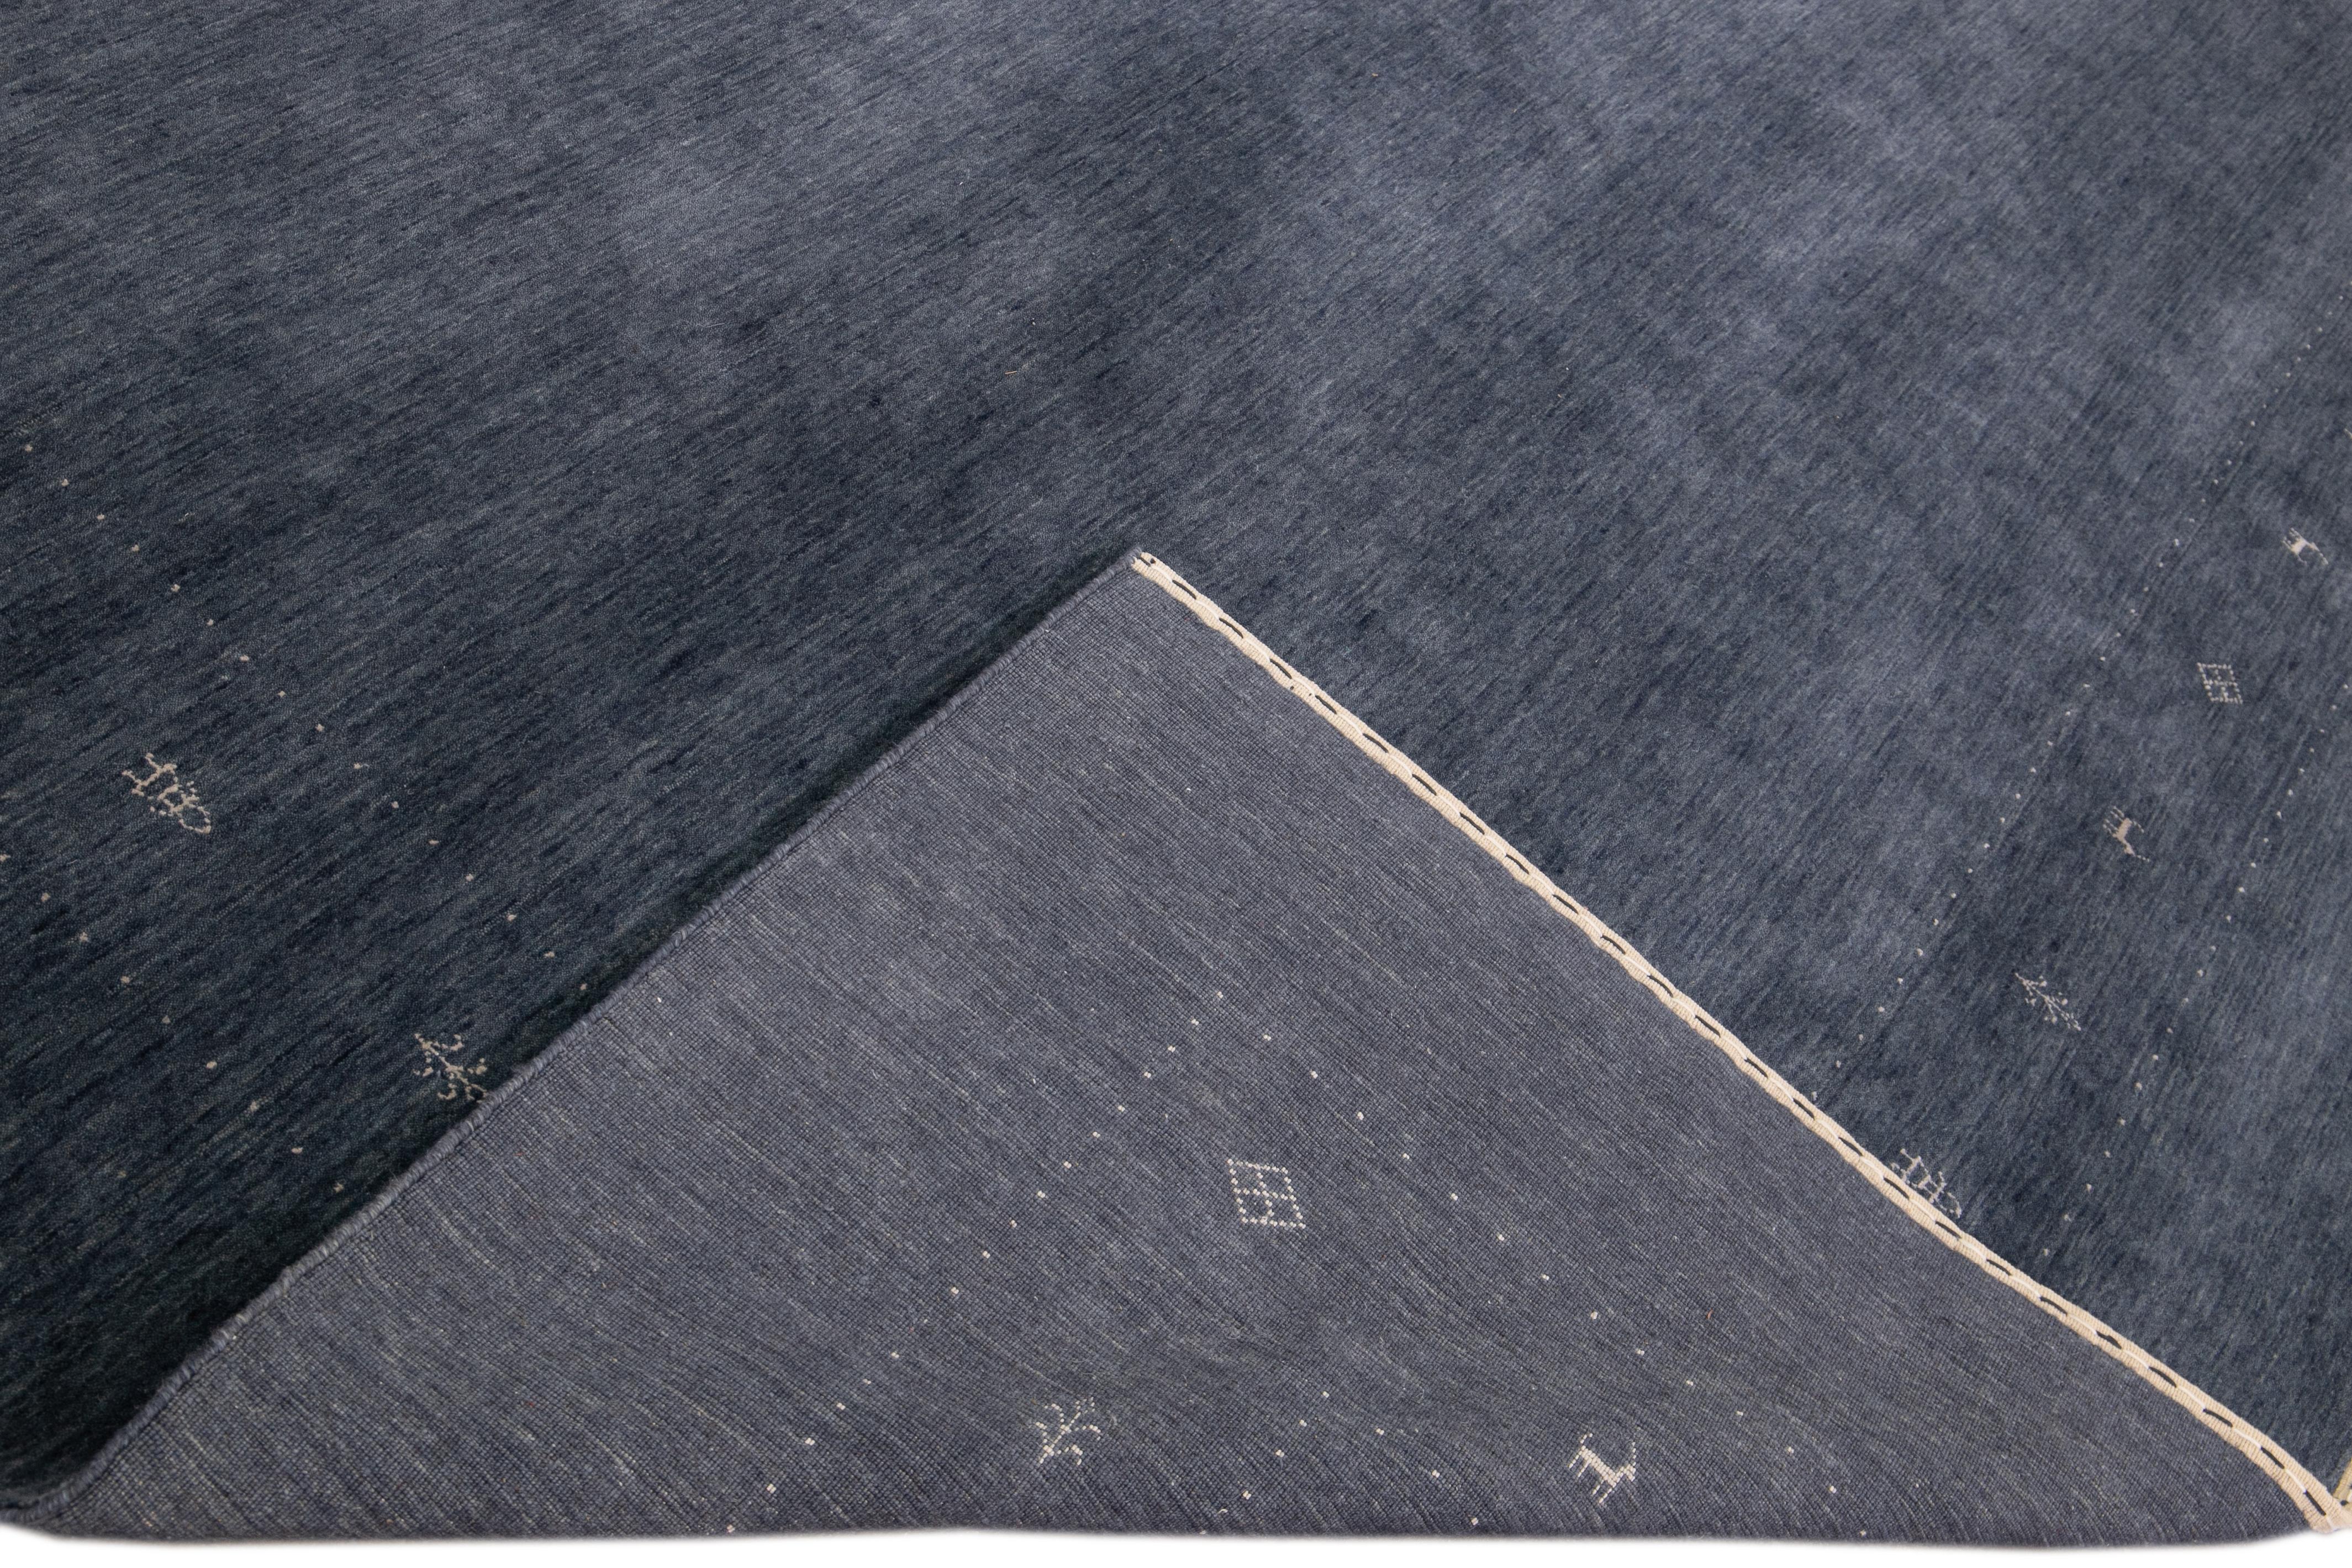 Schöner moderner Gabbeh-Stil Hand-Loom Wollteppich mit einem blauen Feld. Dieser Teppich im Gabbeh-Stil hat weiße Akzente in einem herrlichen geometrischen Minimal-Design.

Dieser Teppich misst: 12' x 15'.

Unsere Teppiche werden vor dem Versand